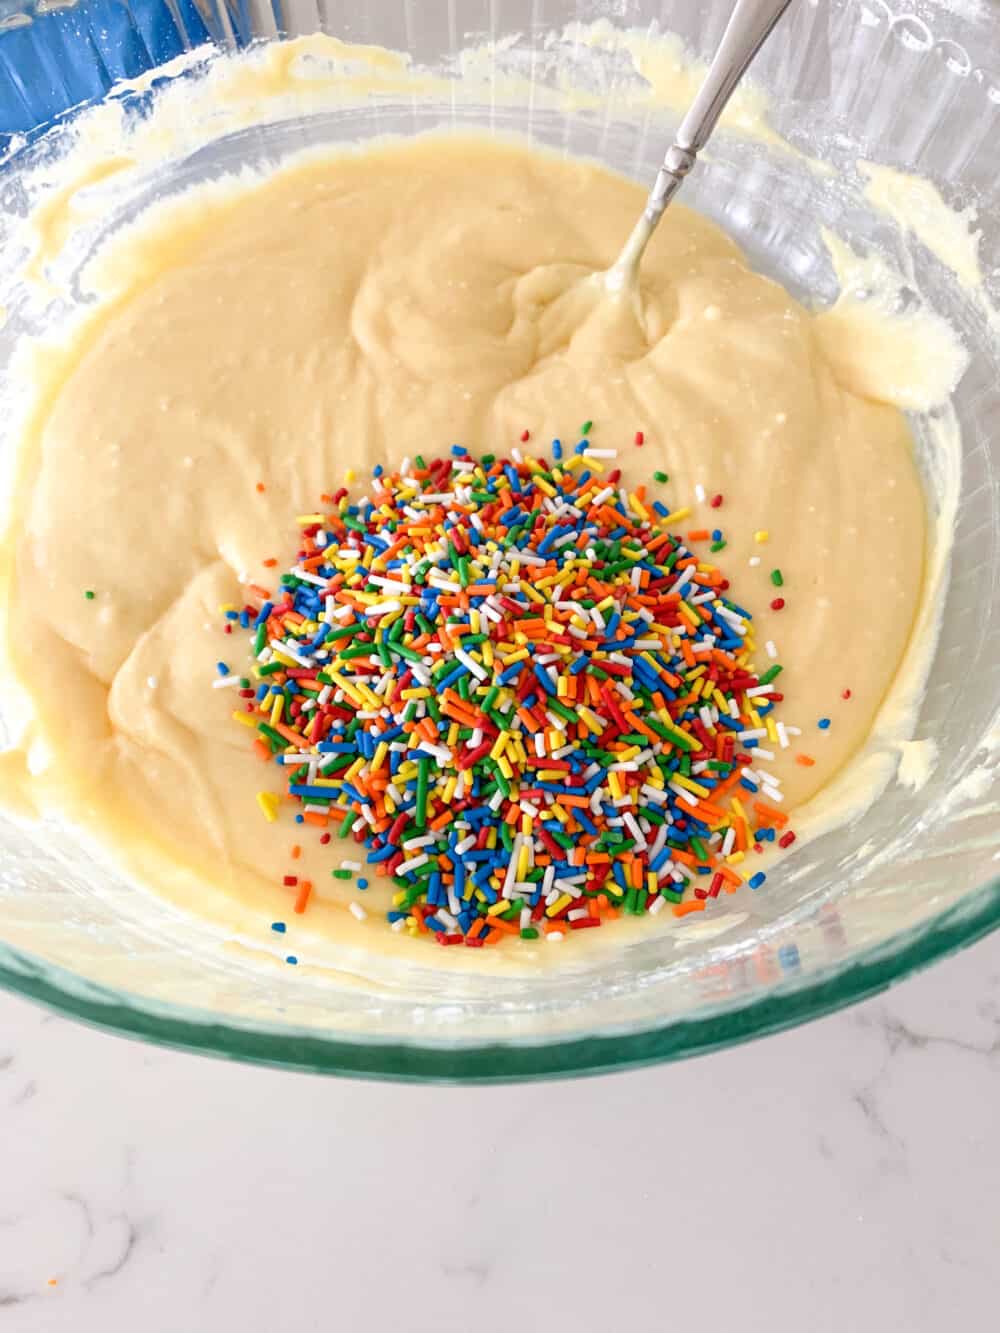 sprinkles in cake batter in mixing bowl